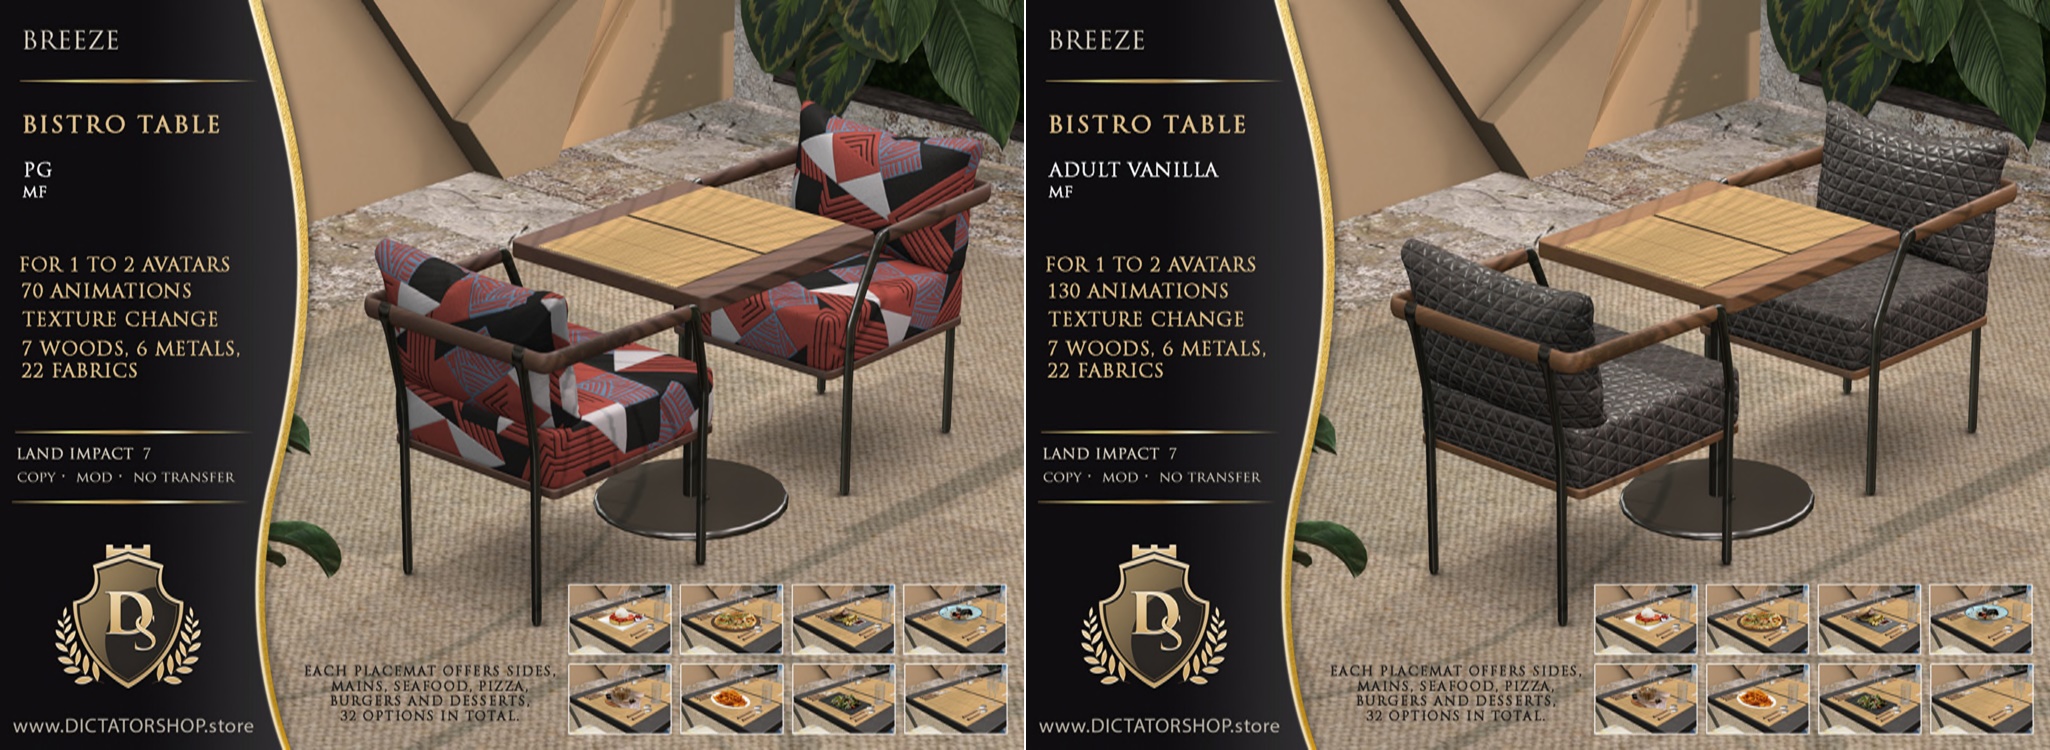 Dictatorshop – Breeze Bistro Table